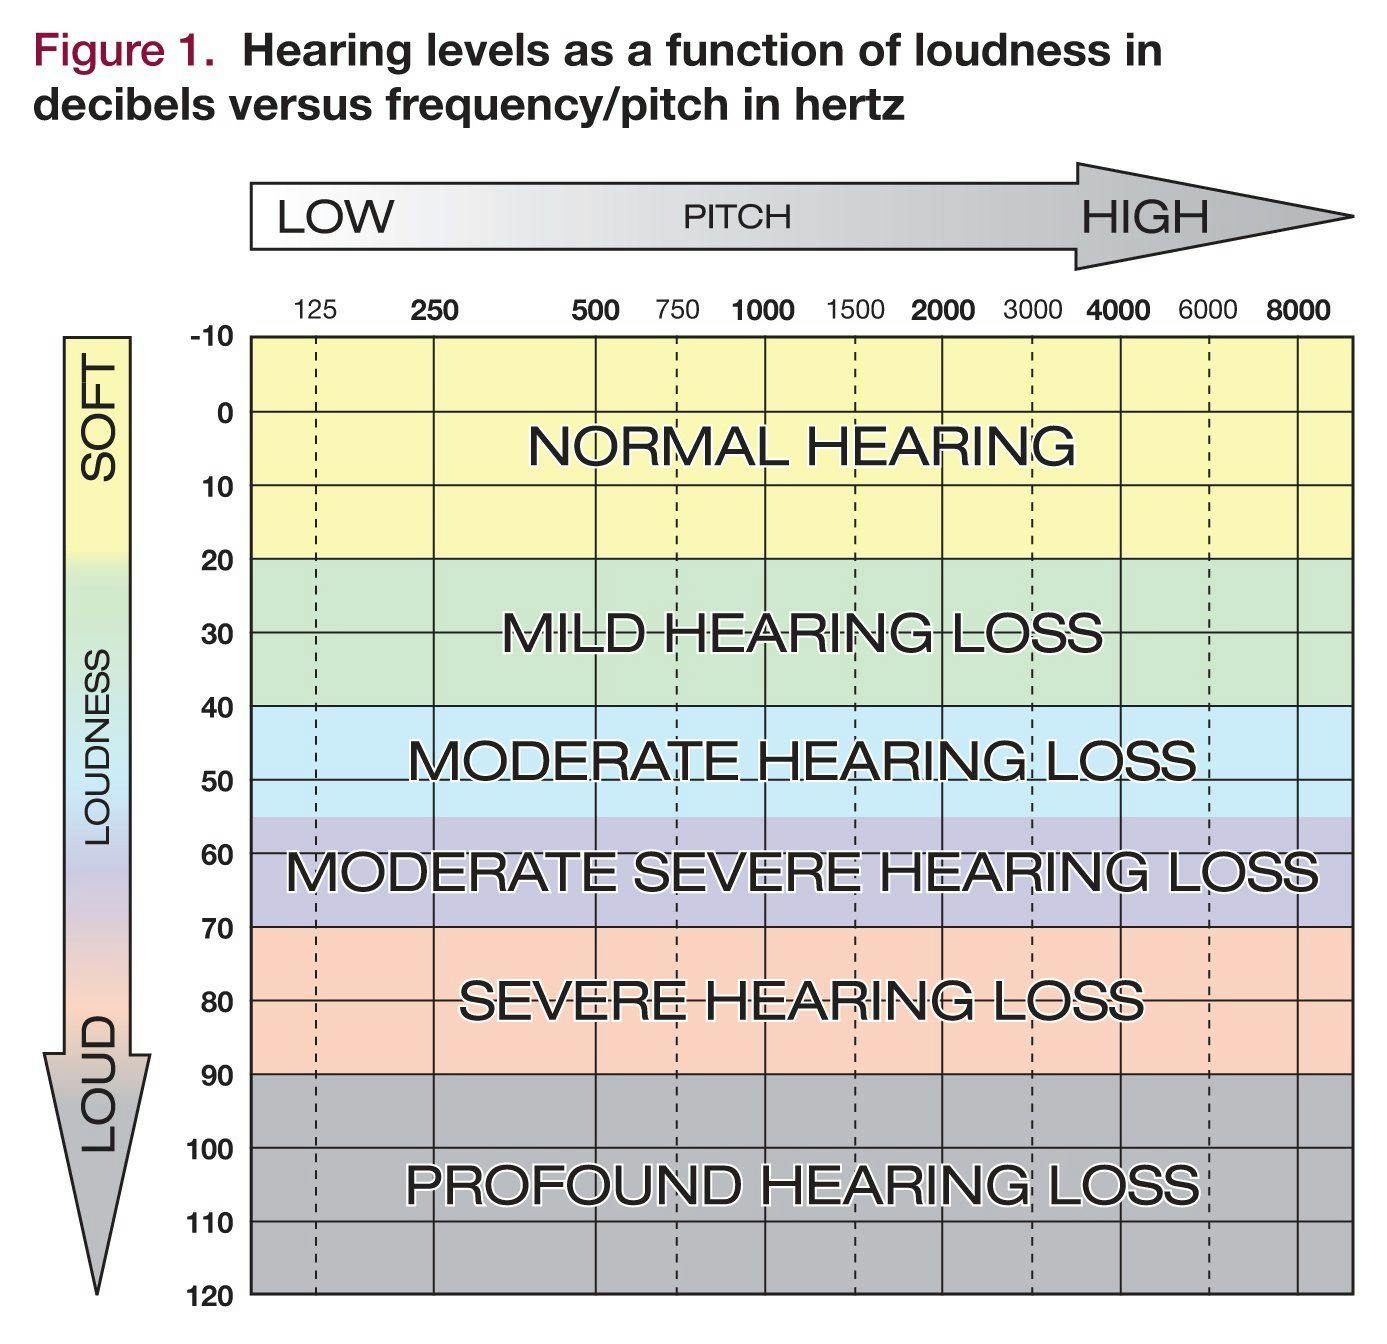 Hearing levels in decibels versus frequency/pitch in hertz